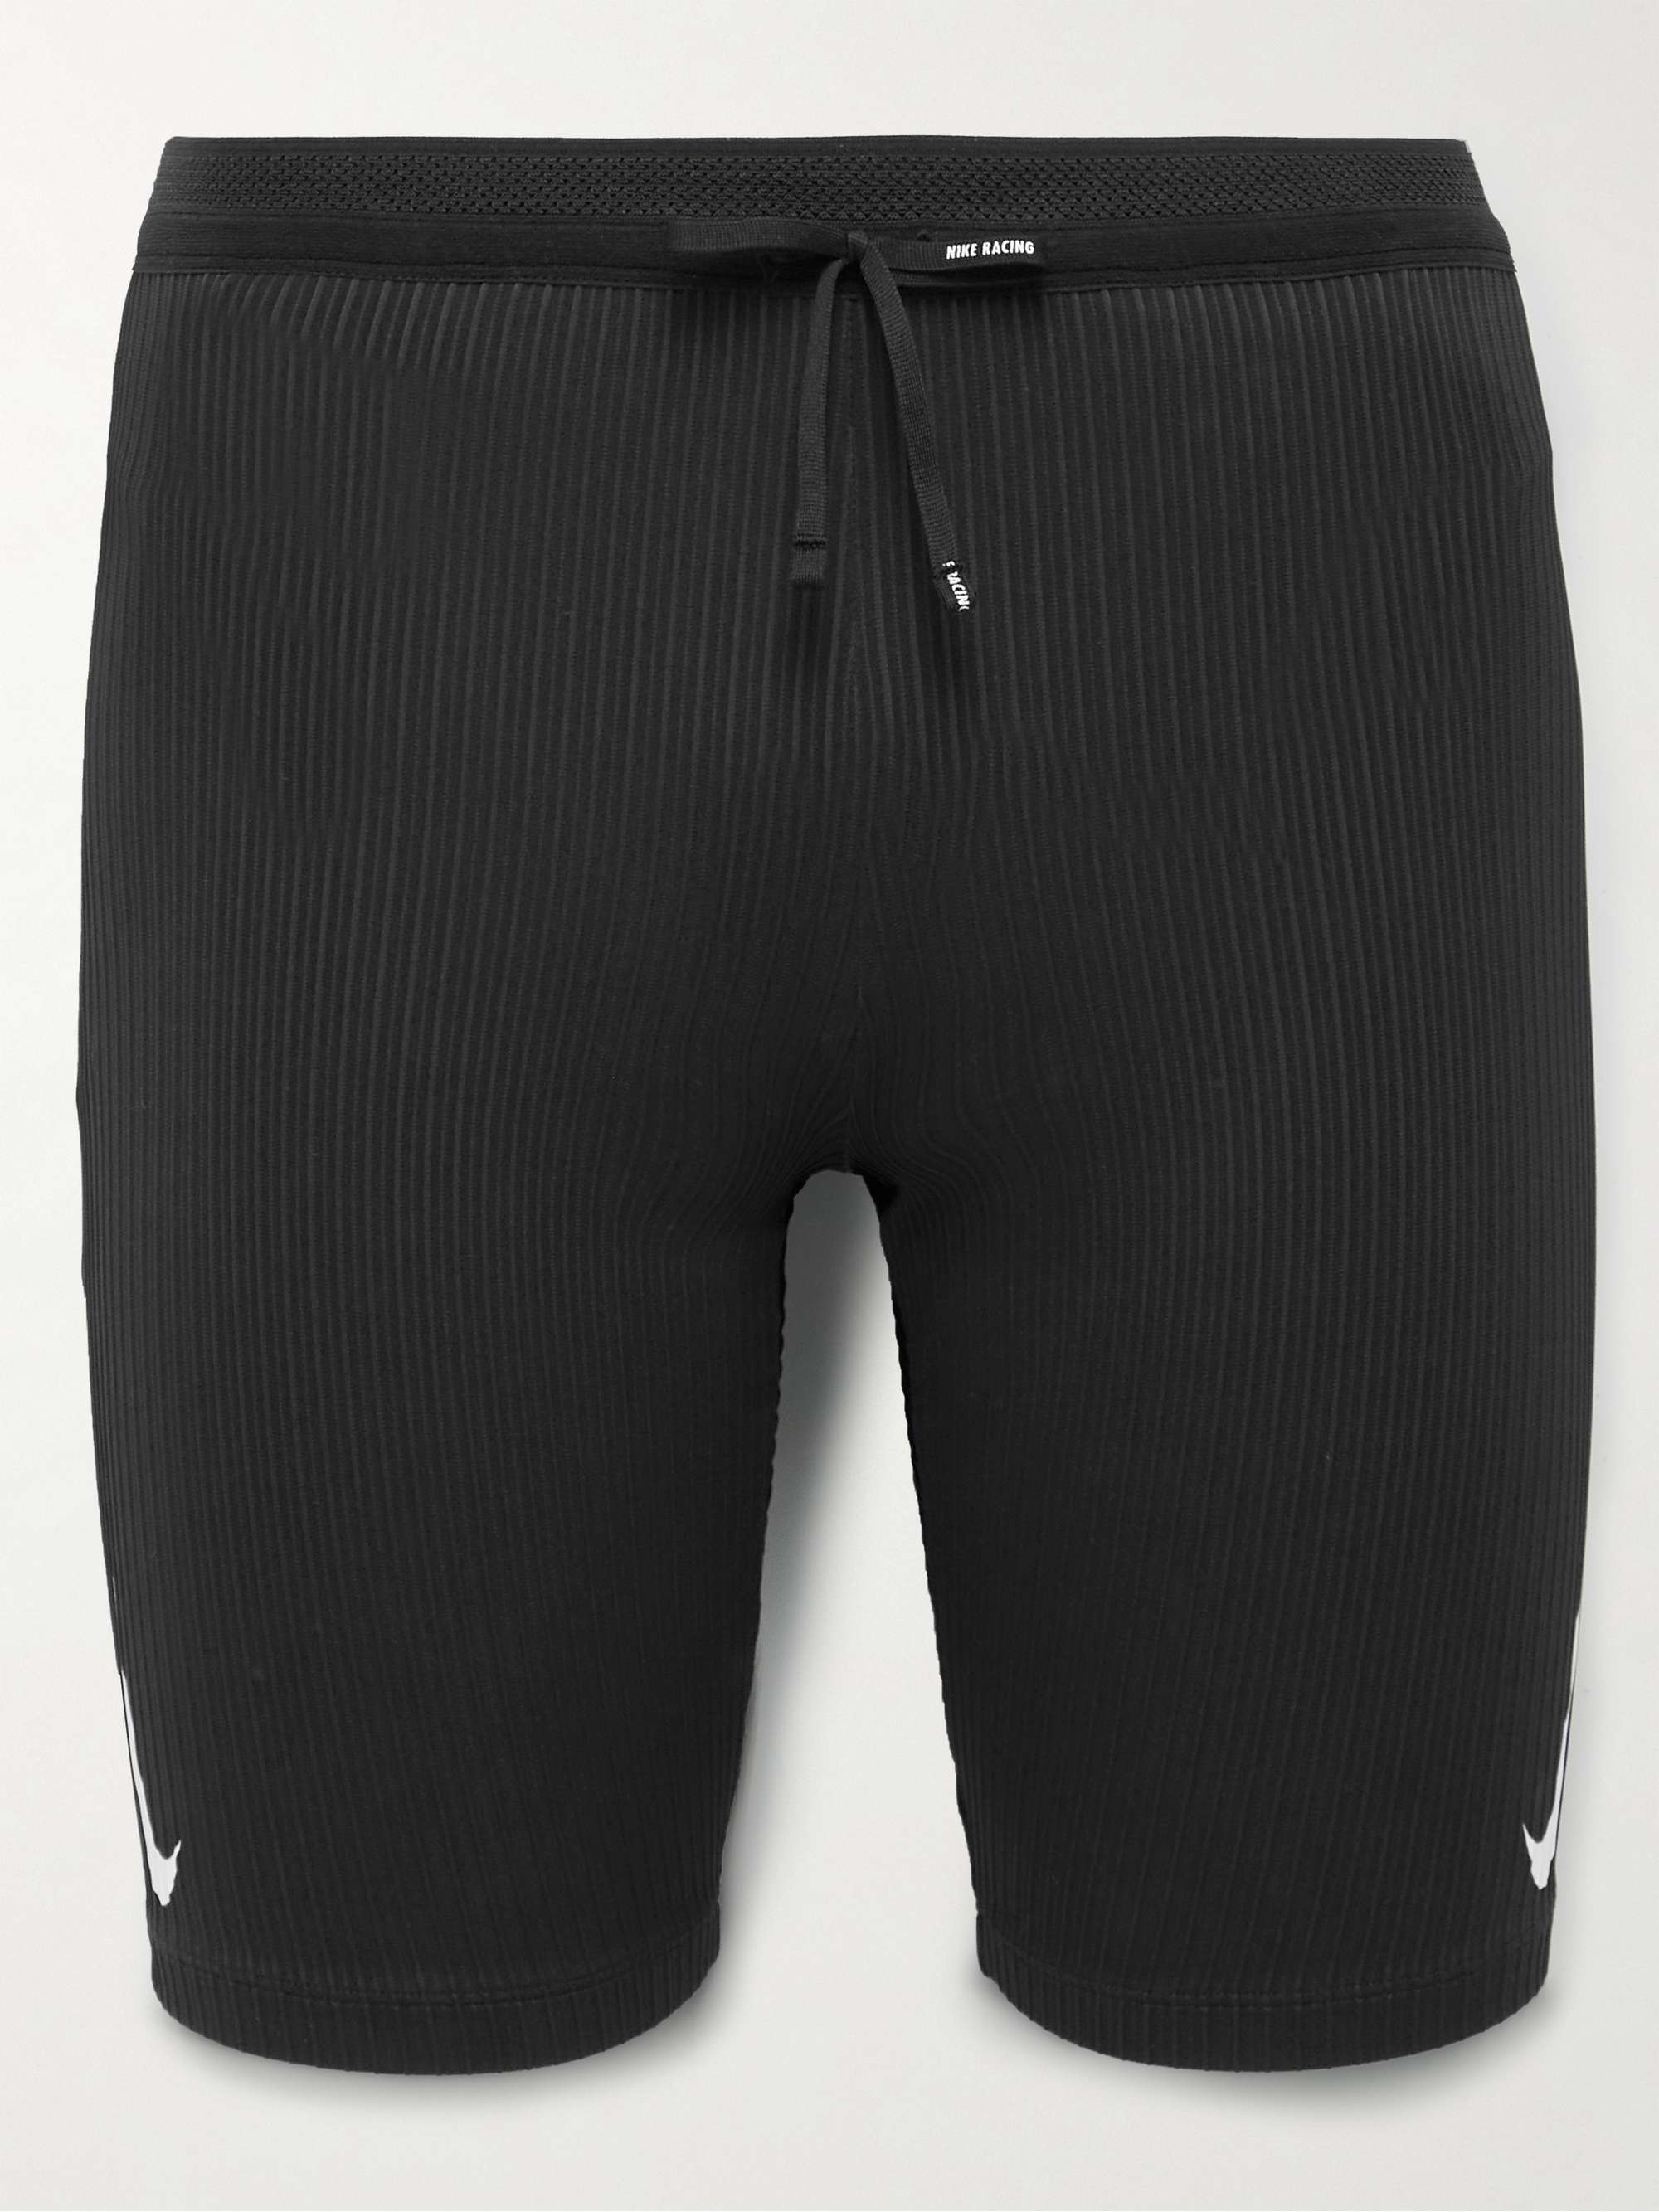 NIKE Nike Dri-FIT ADV AeroSwift Men's 1/2-Length Racing Tights, Black  Men's Athletic Shorts